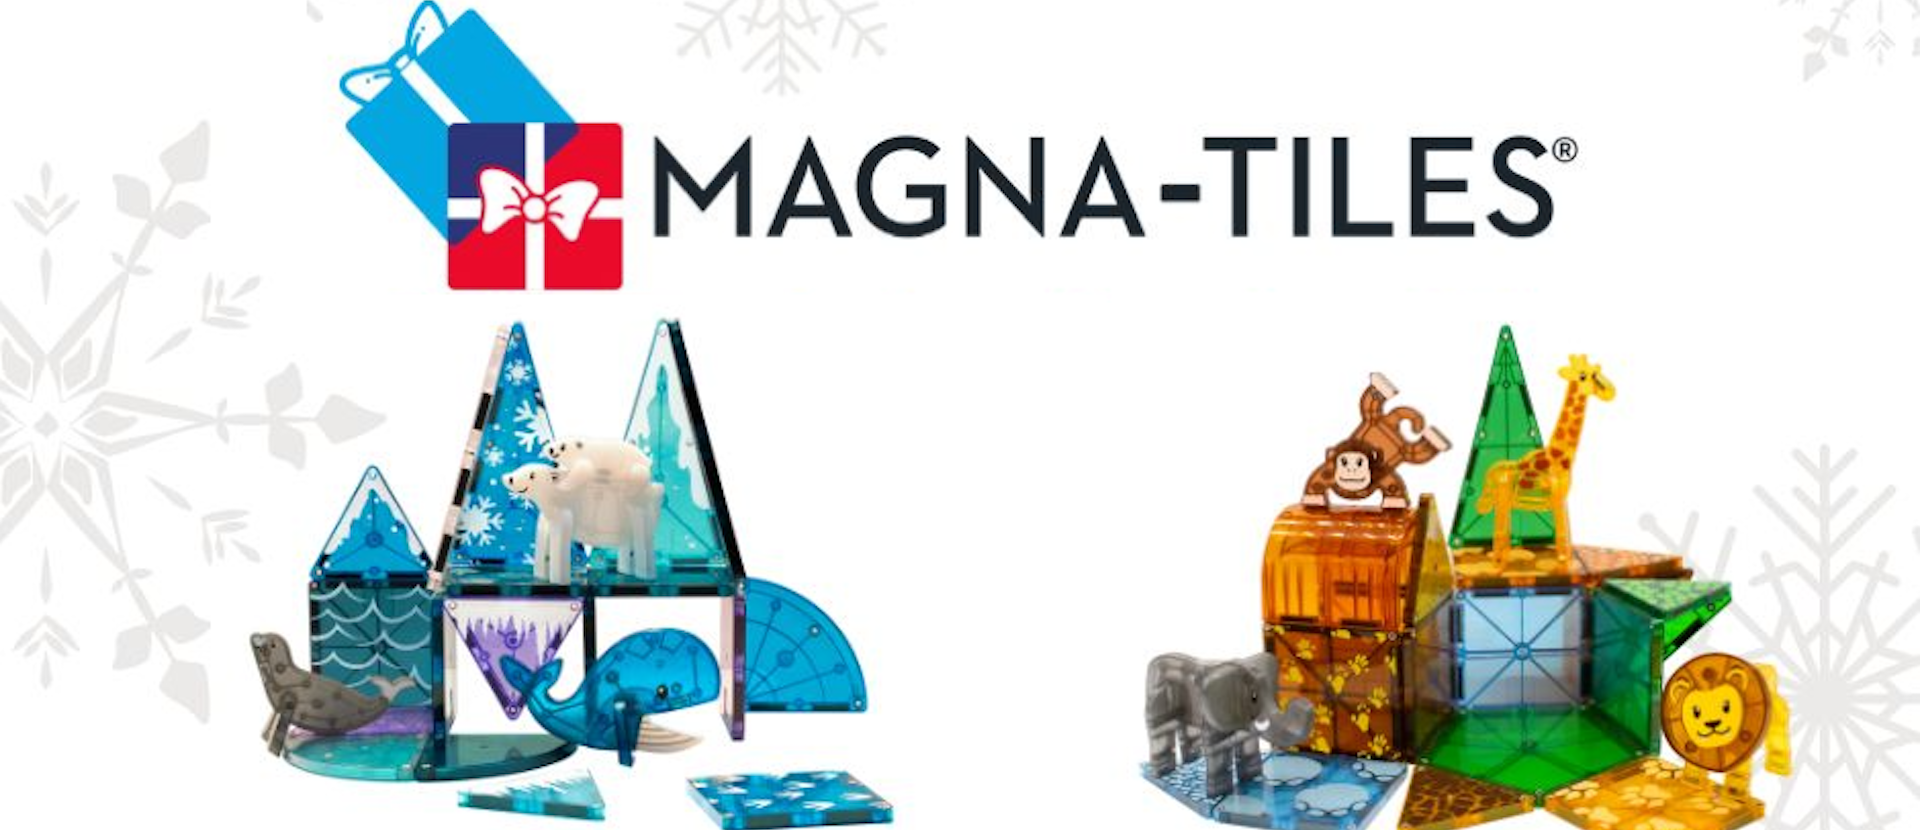 Magna Tiles Magnetic Games